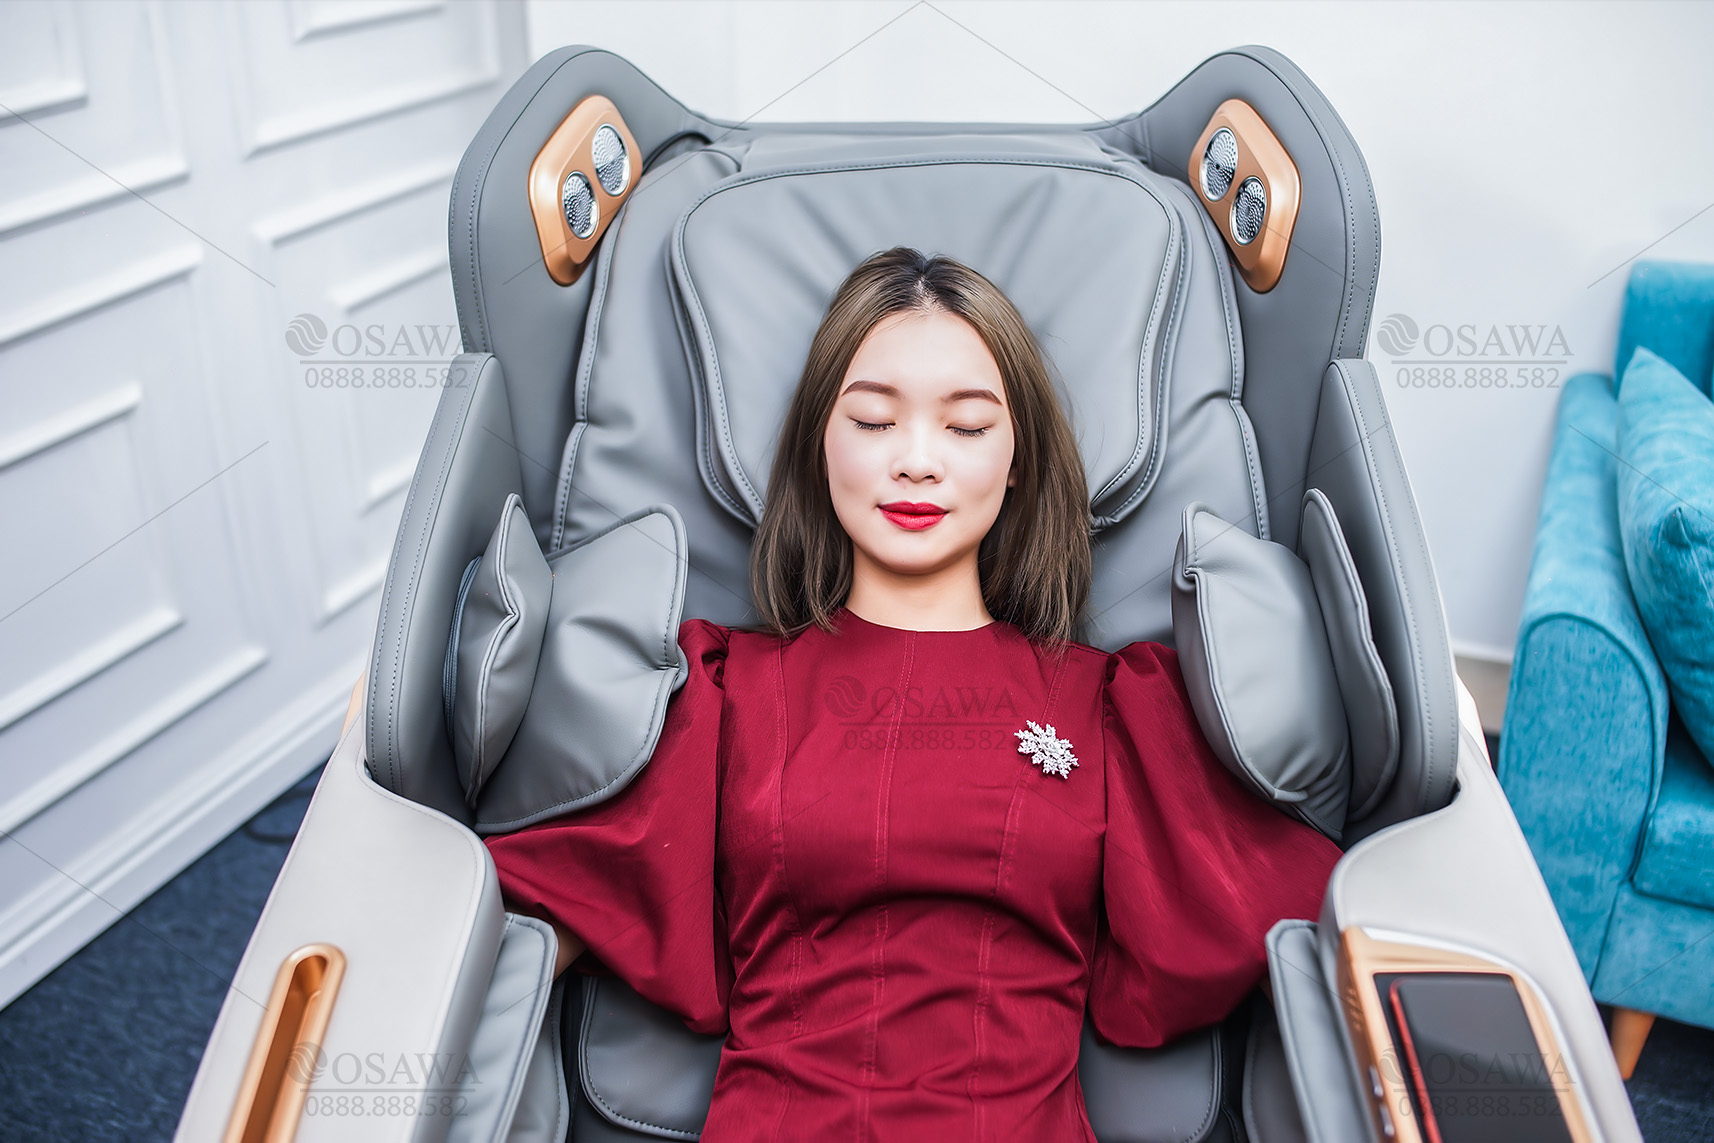 Ghế Massage Osawa OS - 900 - ghế massage cao cấp massage 5D điều khiển bằng giọng nói tiếng Việt